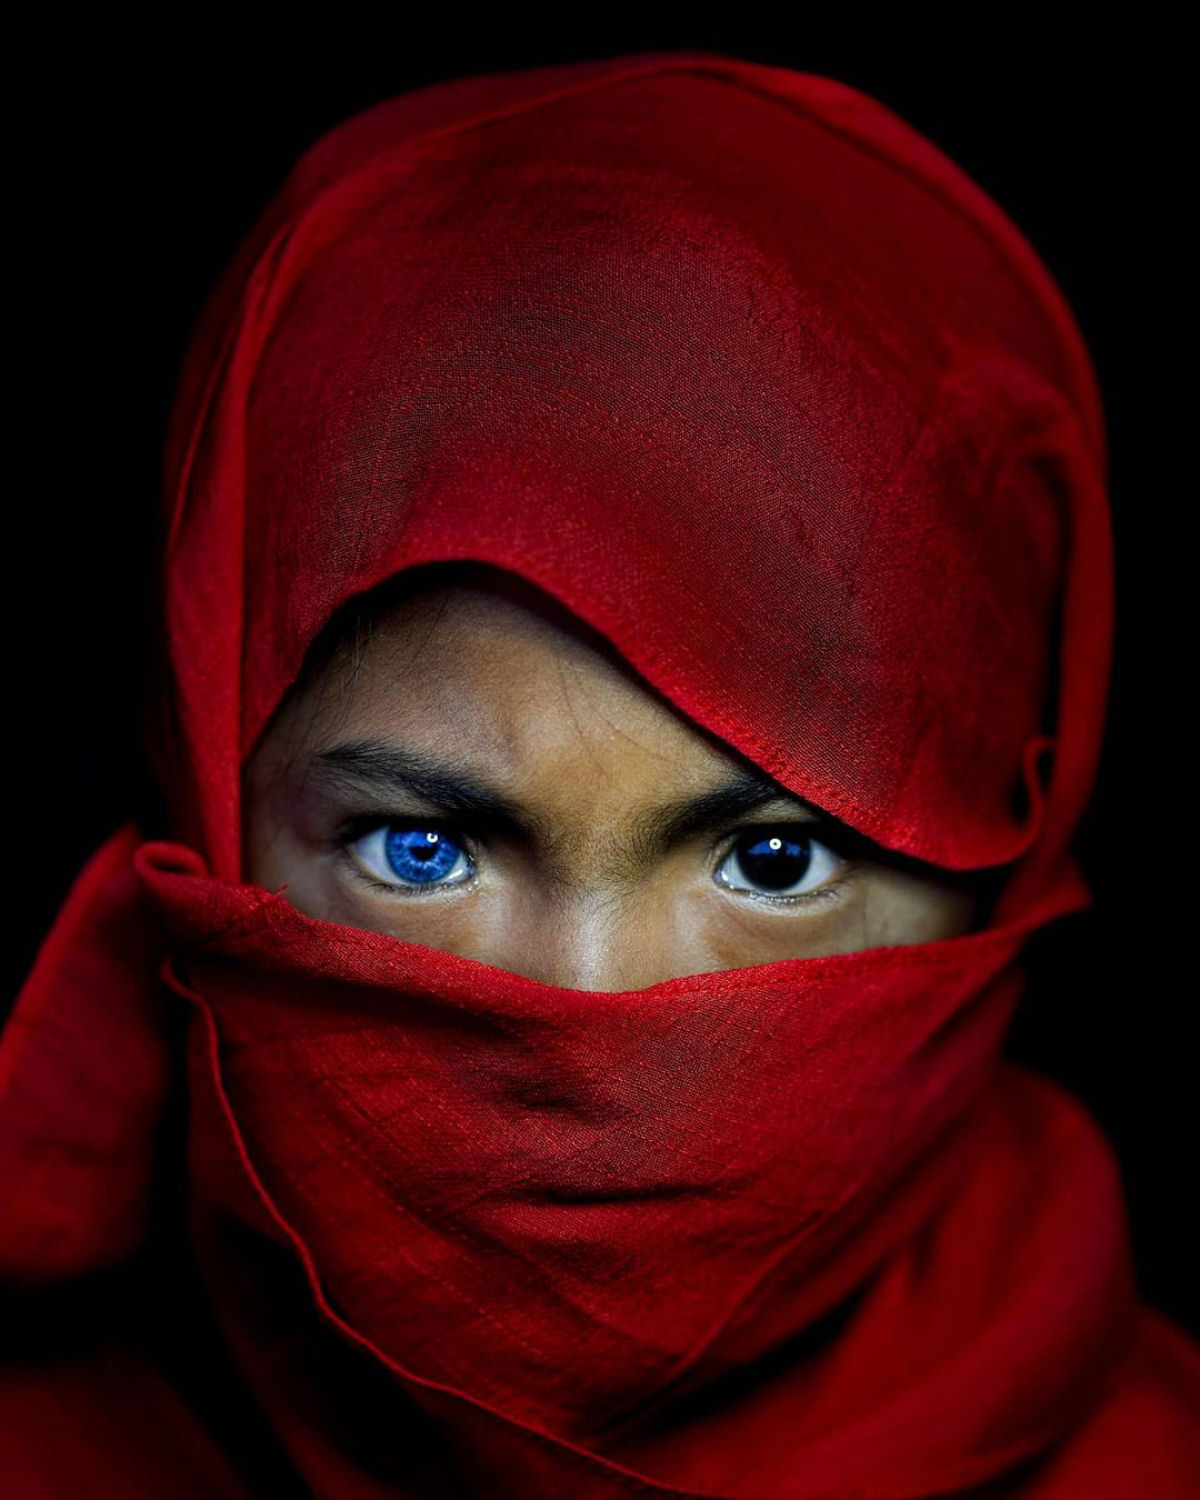 Olhos azuis e brilhantes: as hipnotizantes fotos de uma tribo com uma rara mutação genética 04